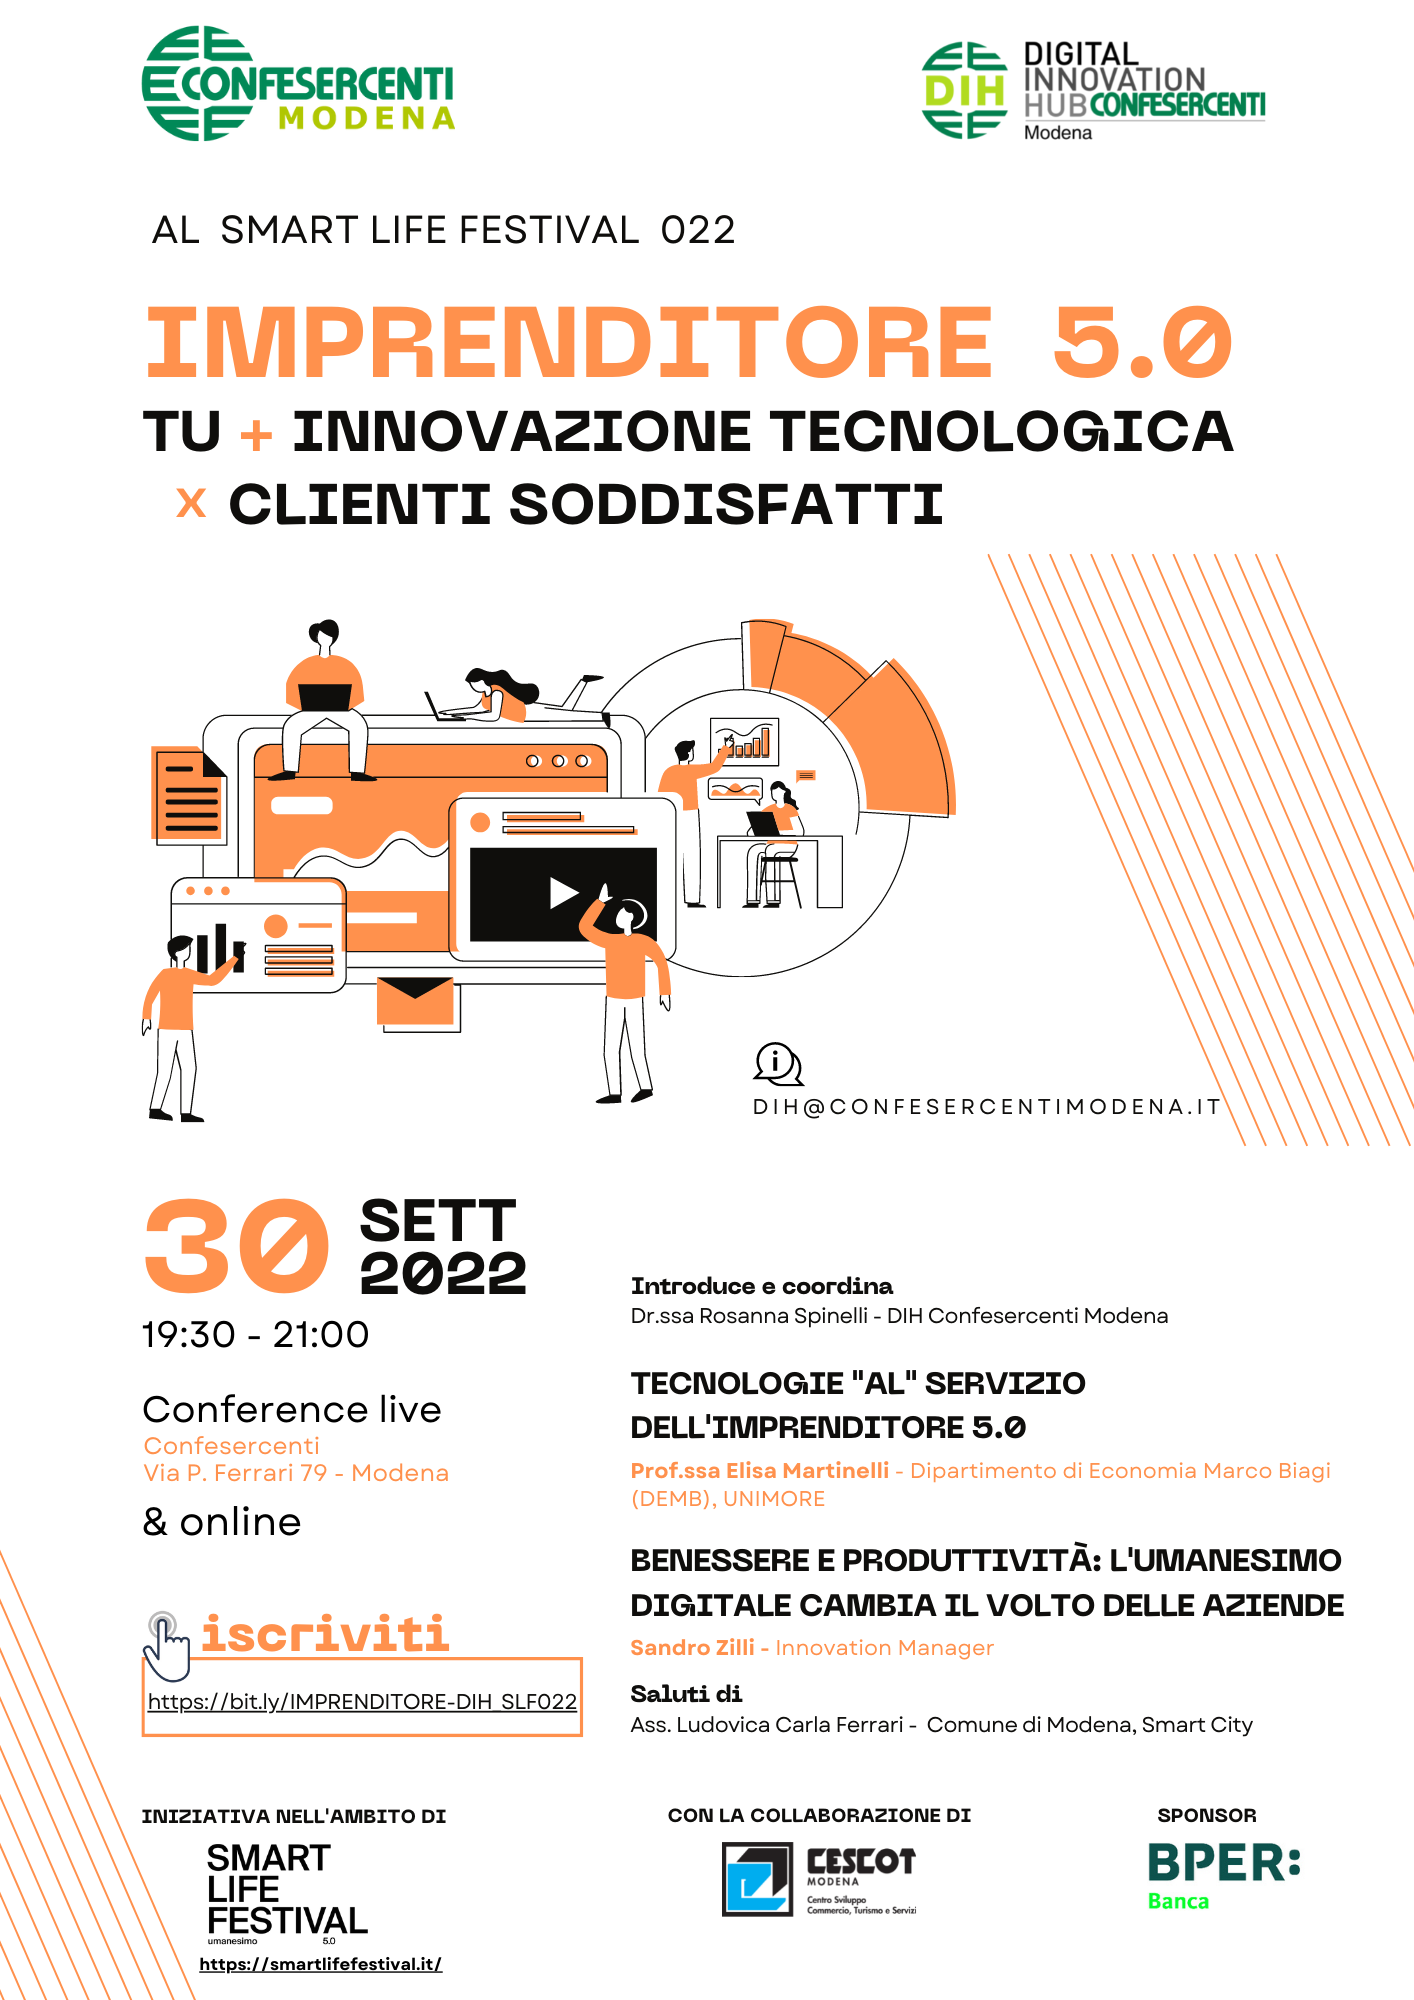 Imprenditore 5.0 - evento Smart Life Festival  - Modena